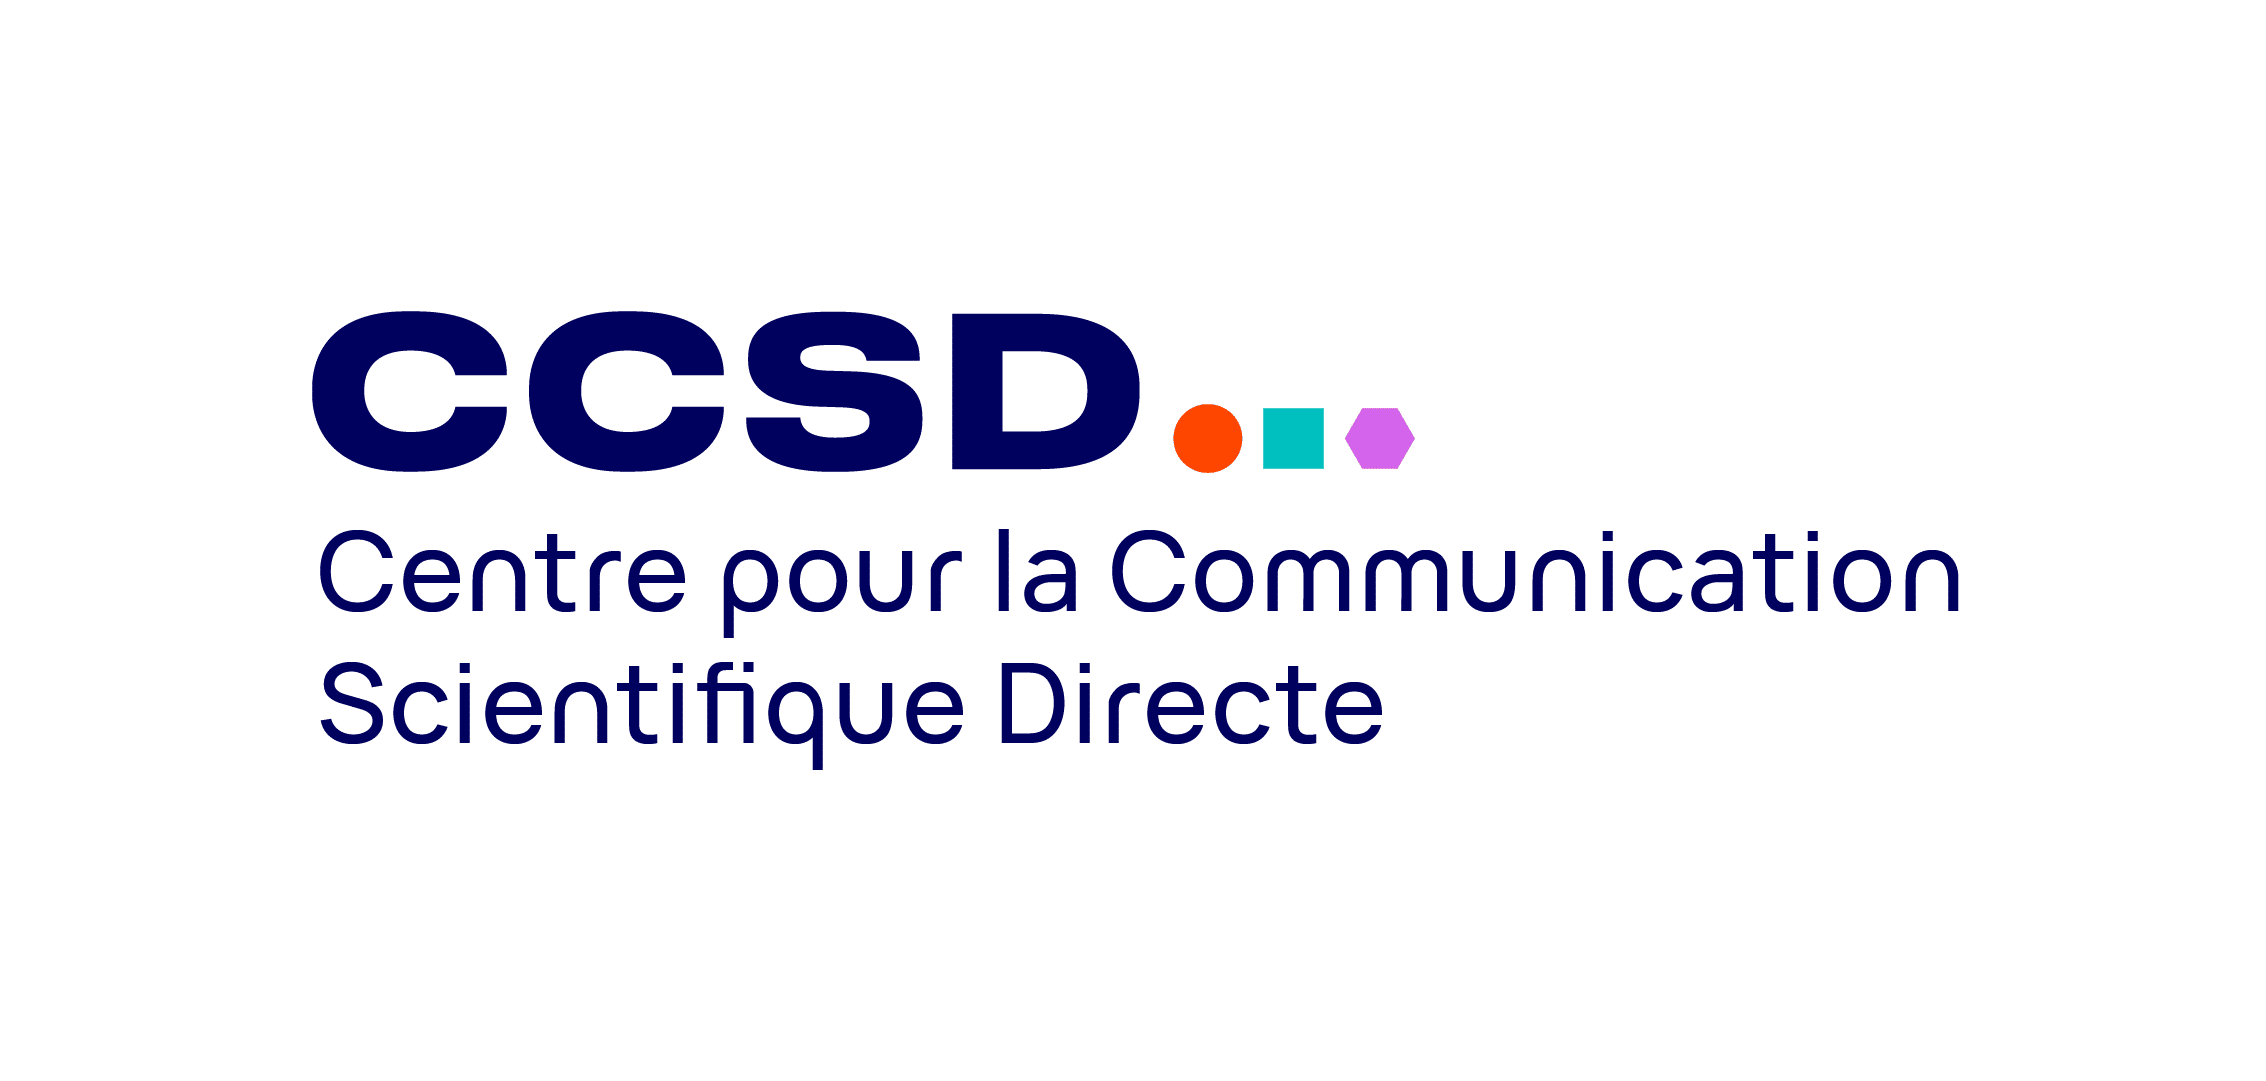 Centre pour la Communication Scientifique Directe